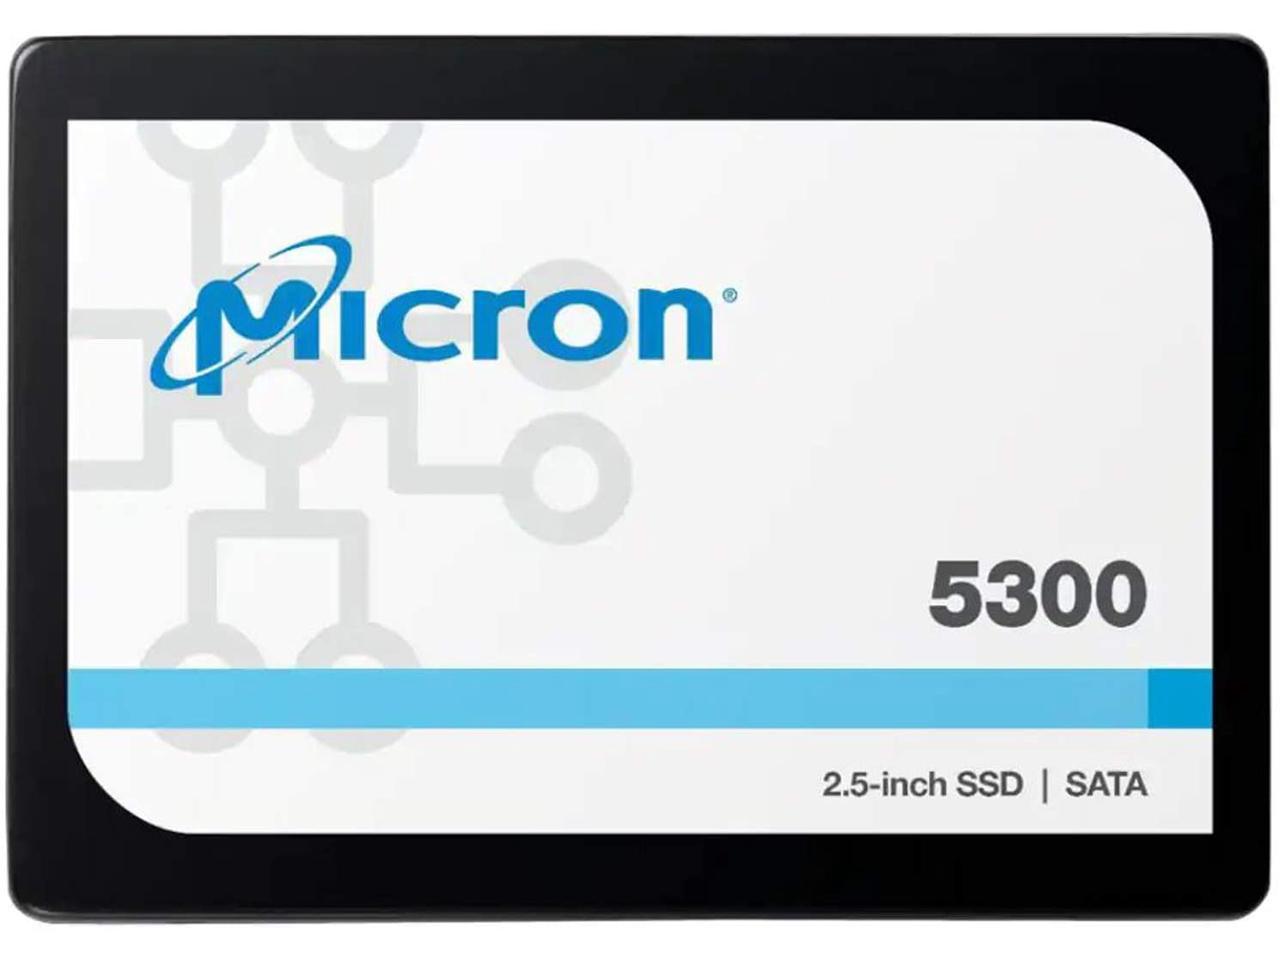 Micron 5300 PRO 960GB SATA 2.5" (7mm) Non-SED Enterprise SSD - Click Image to Close